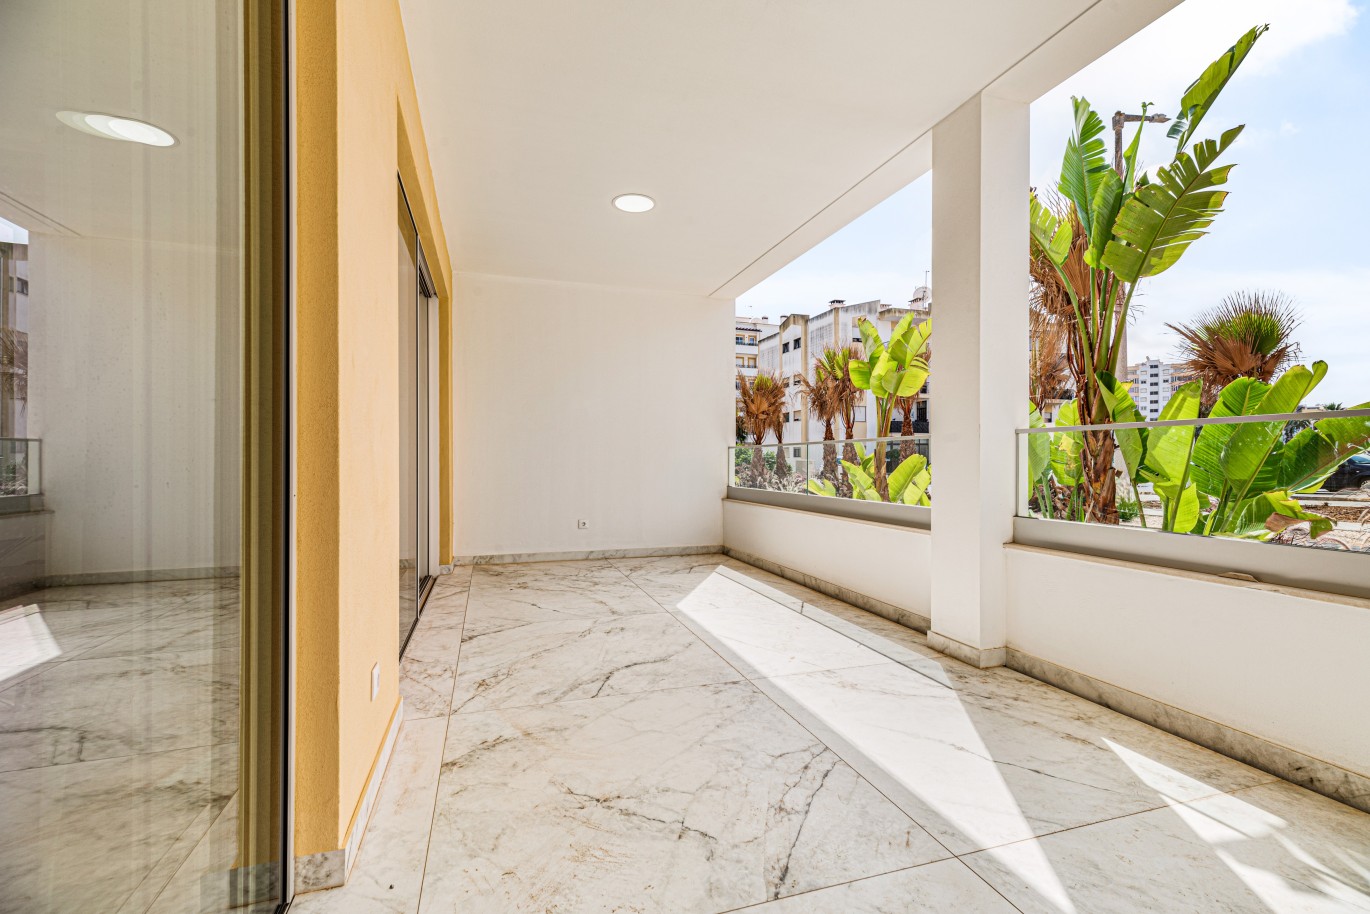 Apartamento, com terraço, para venda, em Lagos, Algarve_238375